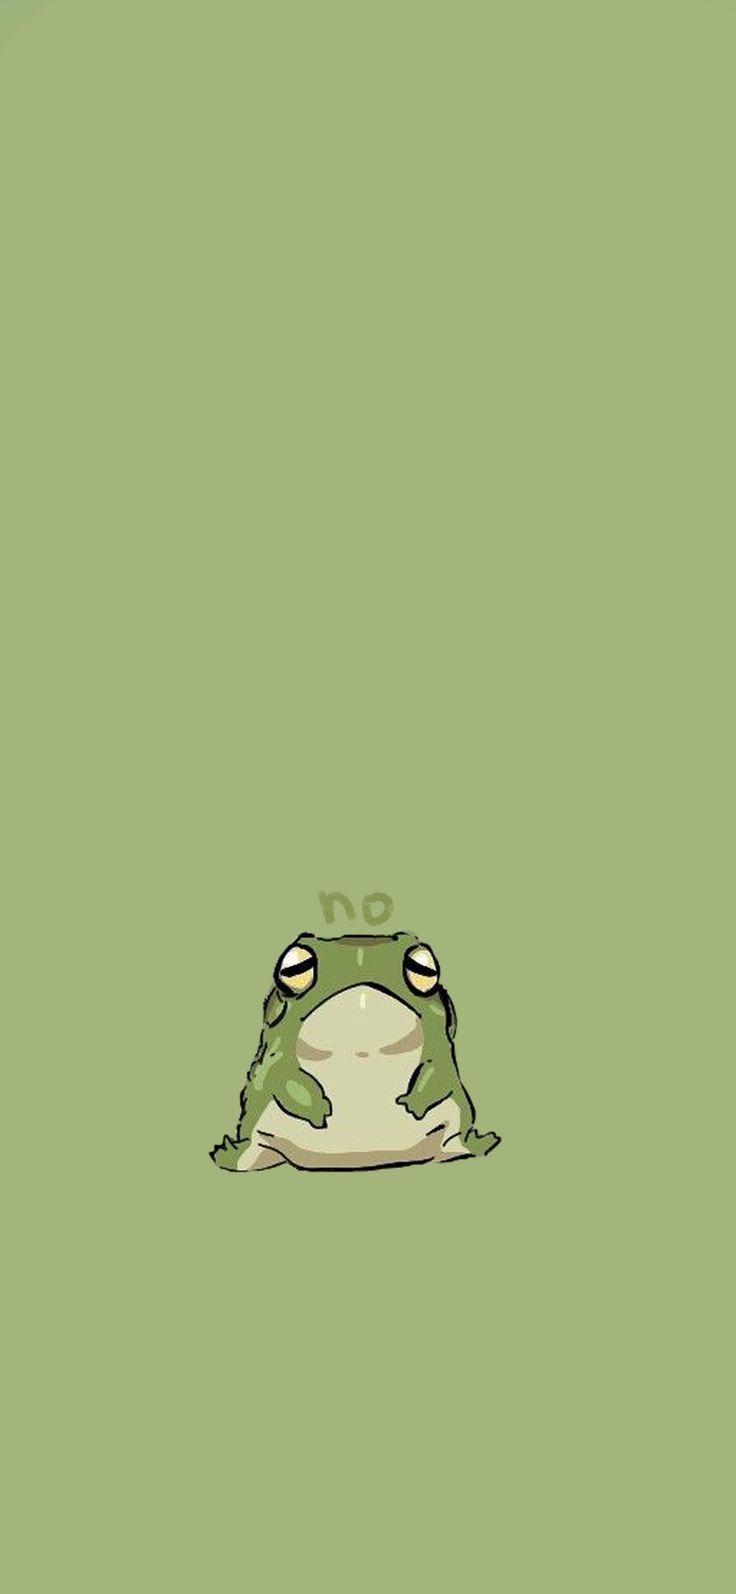 24+] Cartoon Frog iPhone Wallpapers - WallpaperSafari